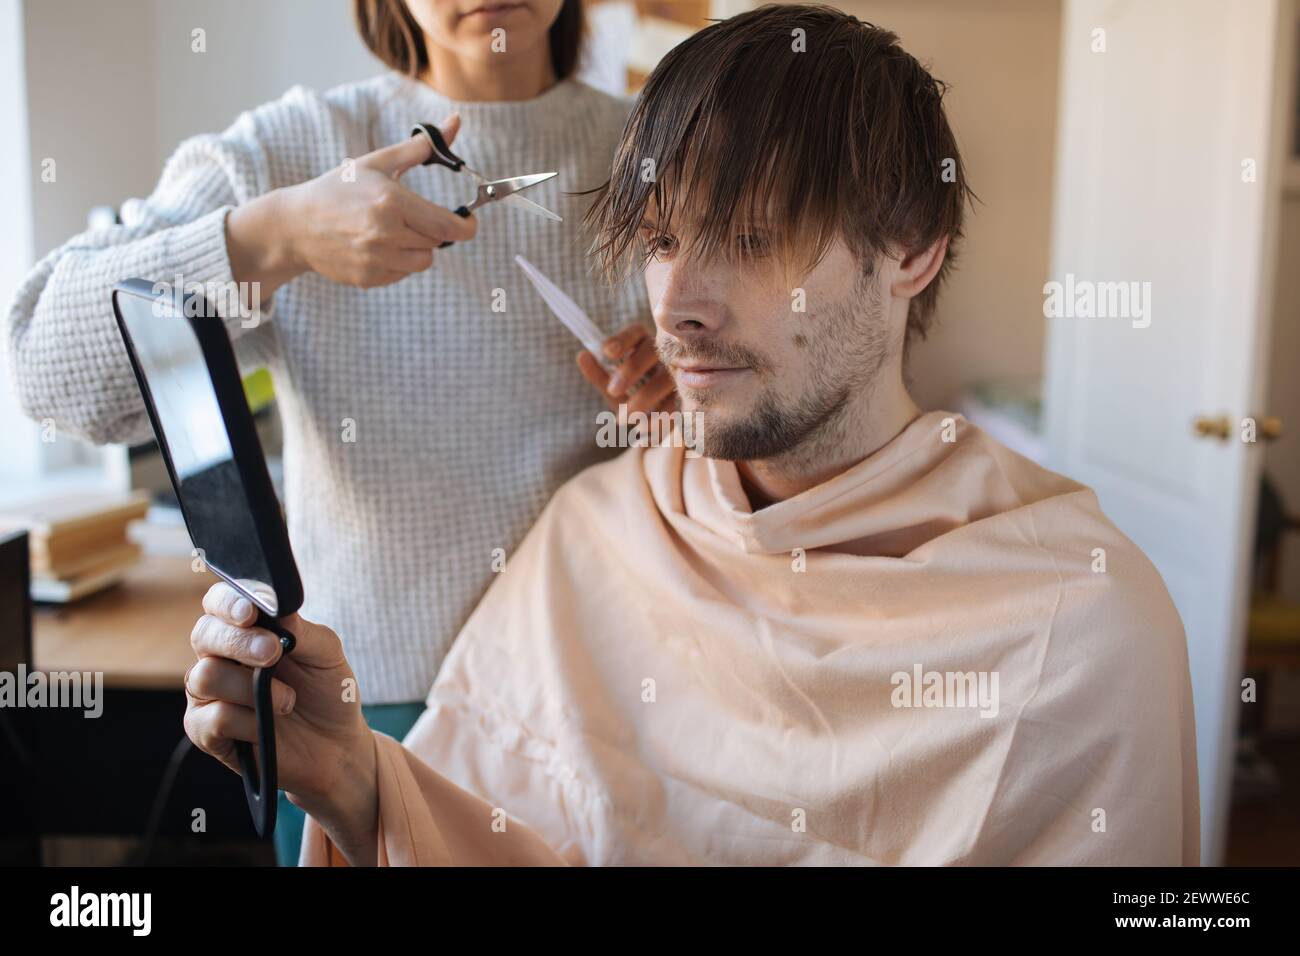 Taglio capelli casa. Uomo che taglia i capelli a casa. Vita in pandemia durante il blocco. Come tagliare i vostri propri capelli quando i parrucchieri sono chiusi. Taglio automatico più semplice Foto Stock